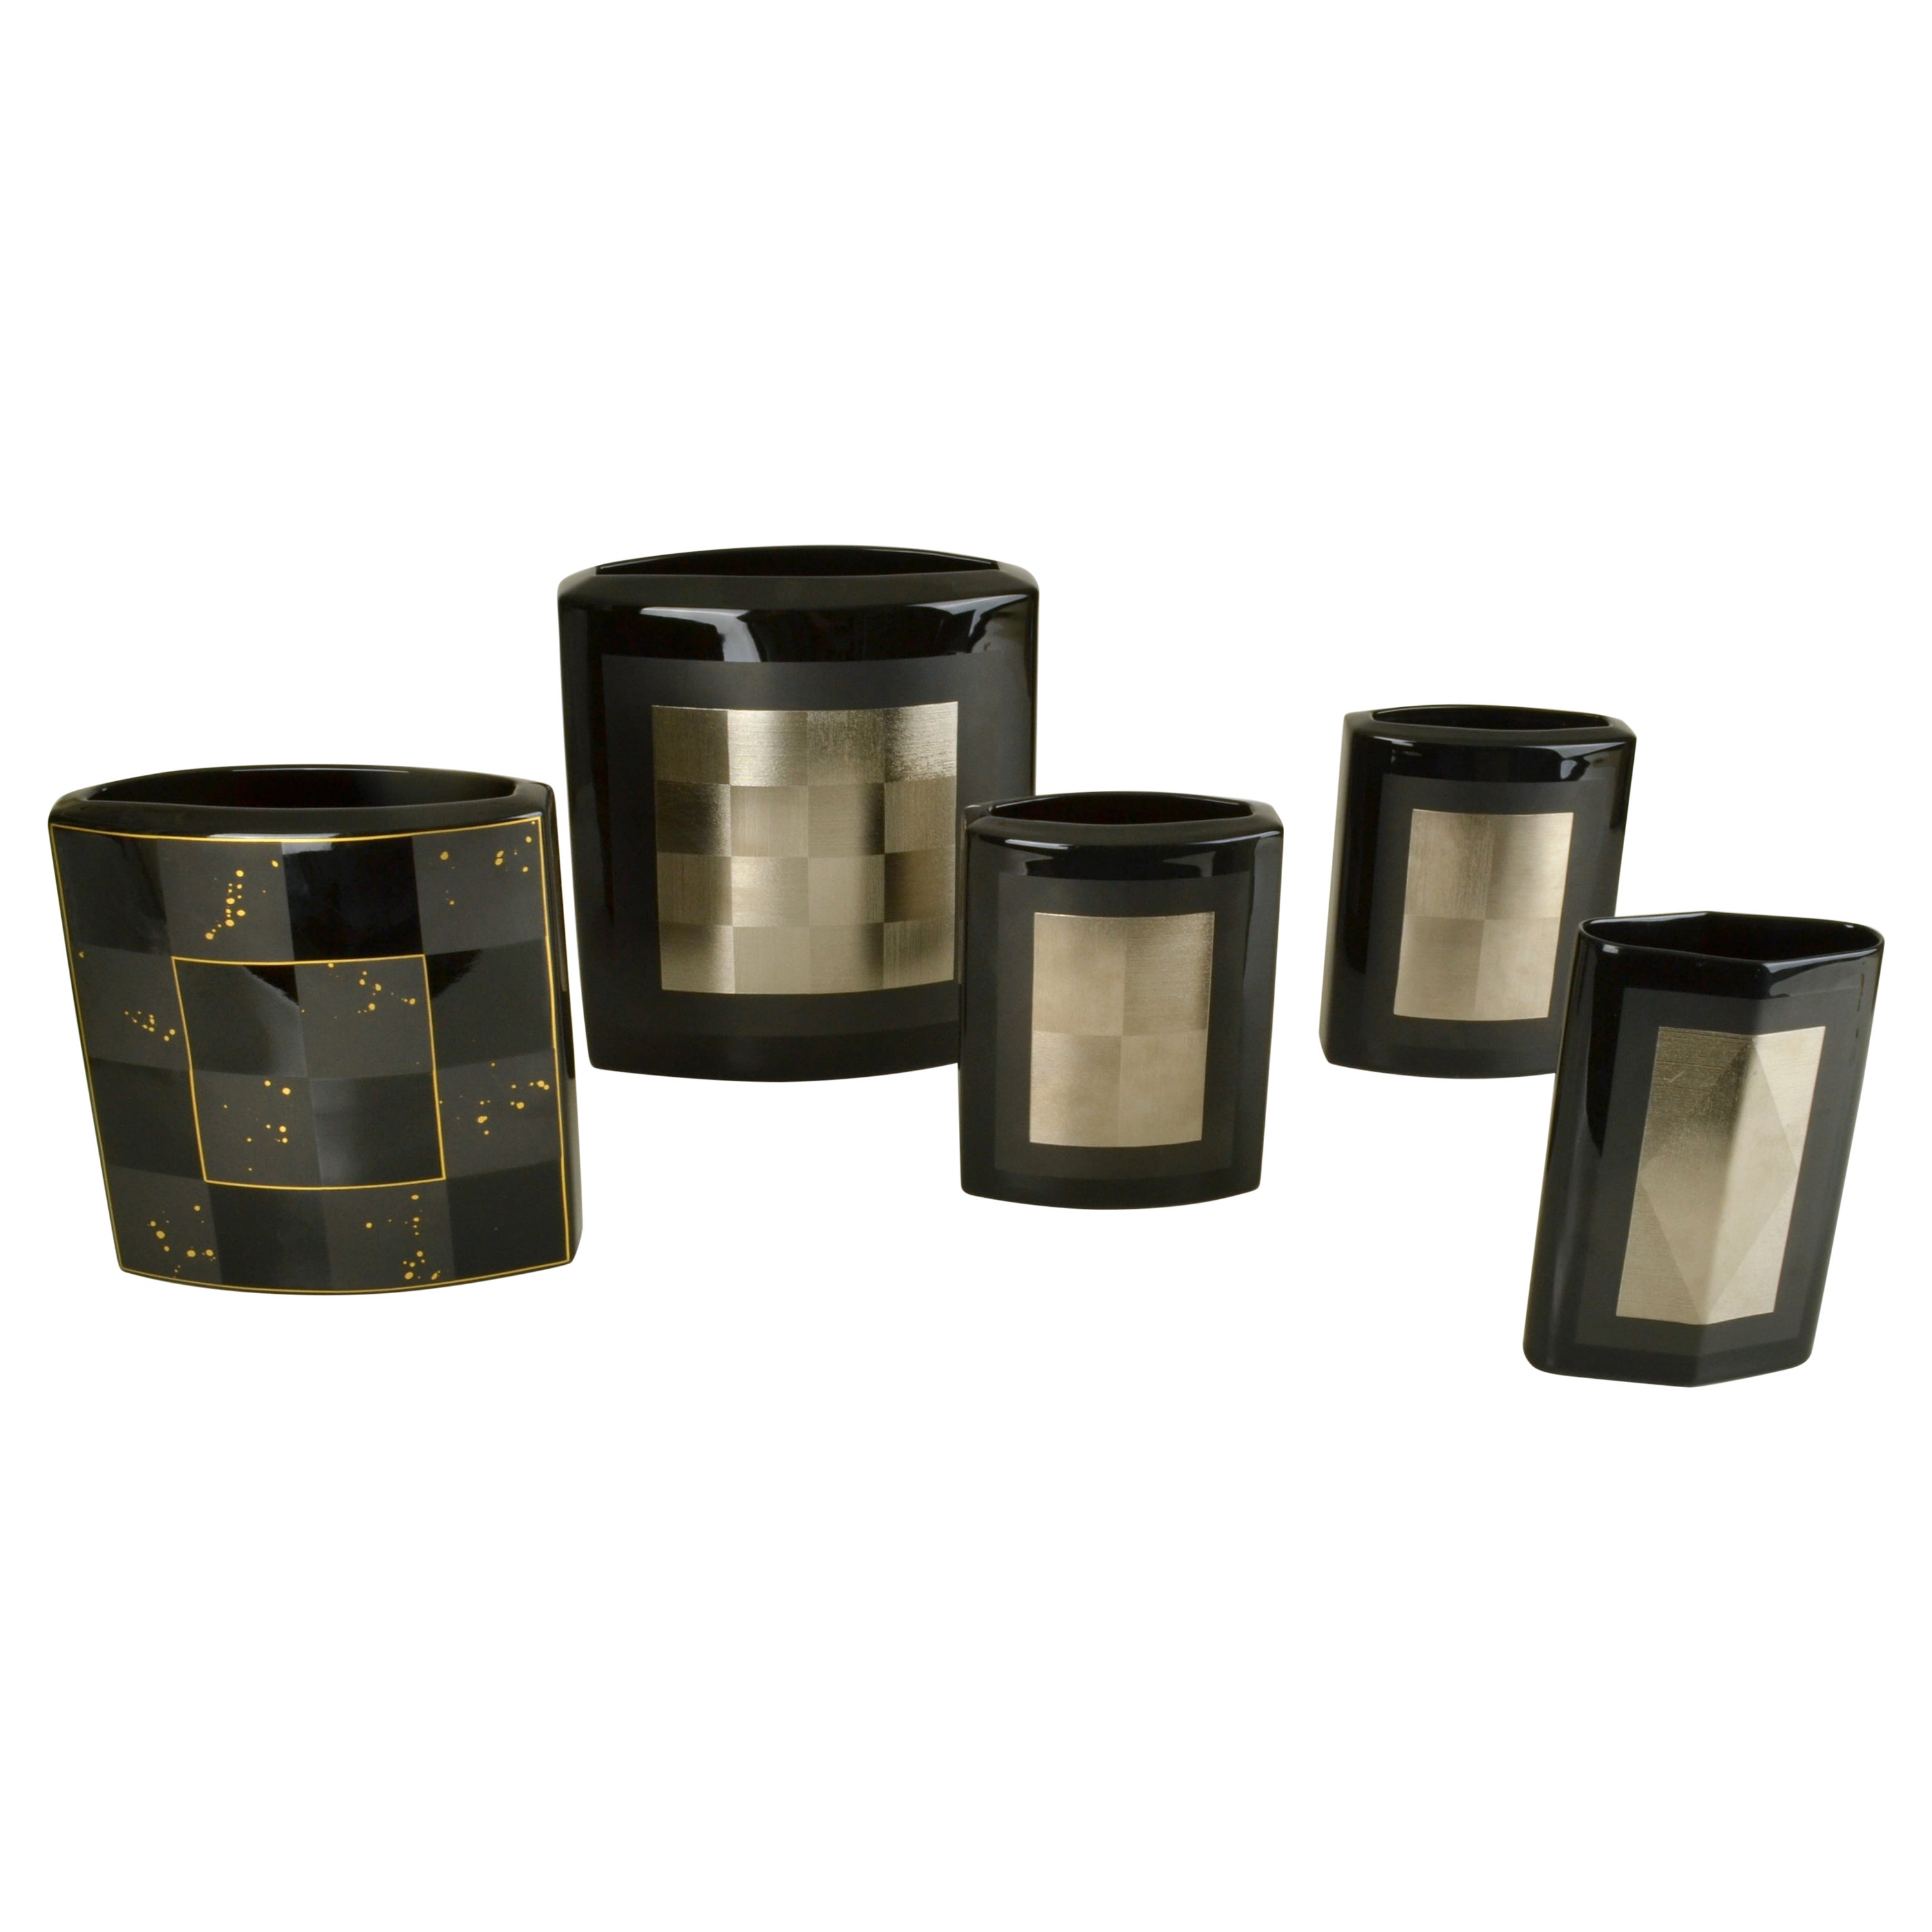 Set of Five Rosenthal Vases Black Studio-Line by Dresler and Treyden For Sale